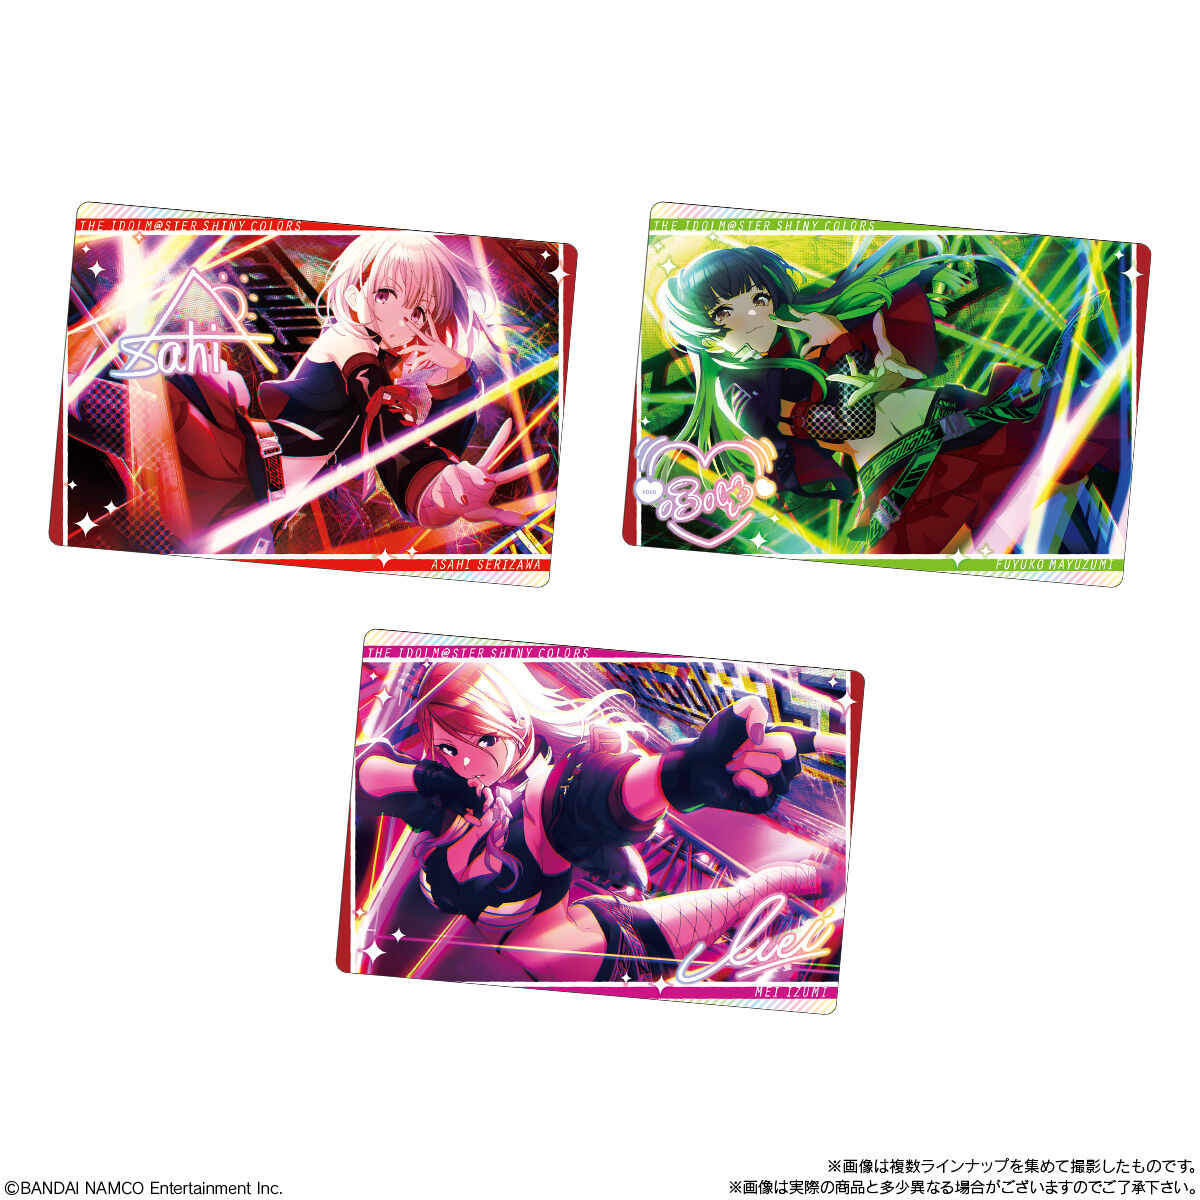 【食玩】シャニマス『アイドルマスター シャイニーカラーズ ウエハース』20個入りBOX-006